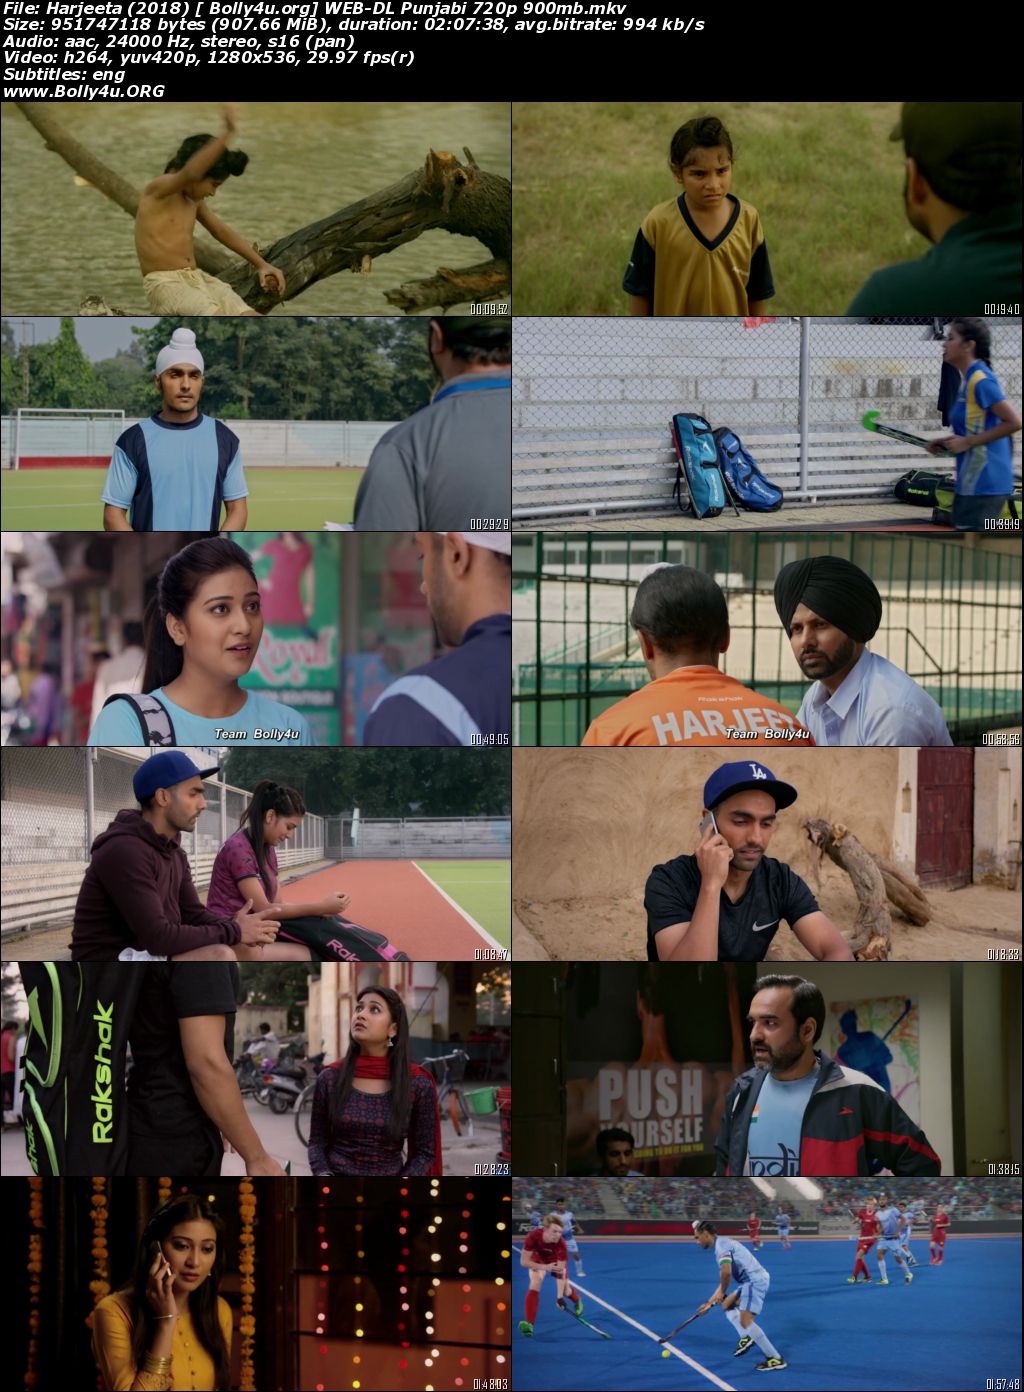 Harjeeta 2018 WEB-DL 900Mb Punjabi Movie Download 720p